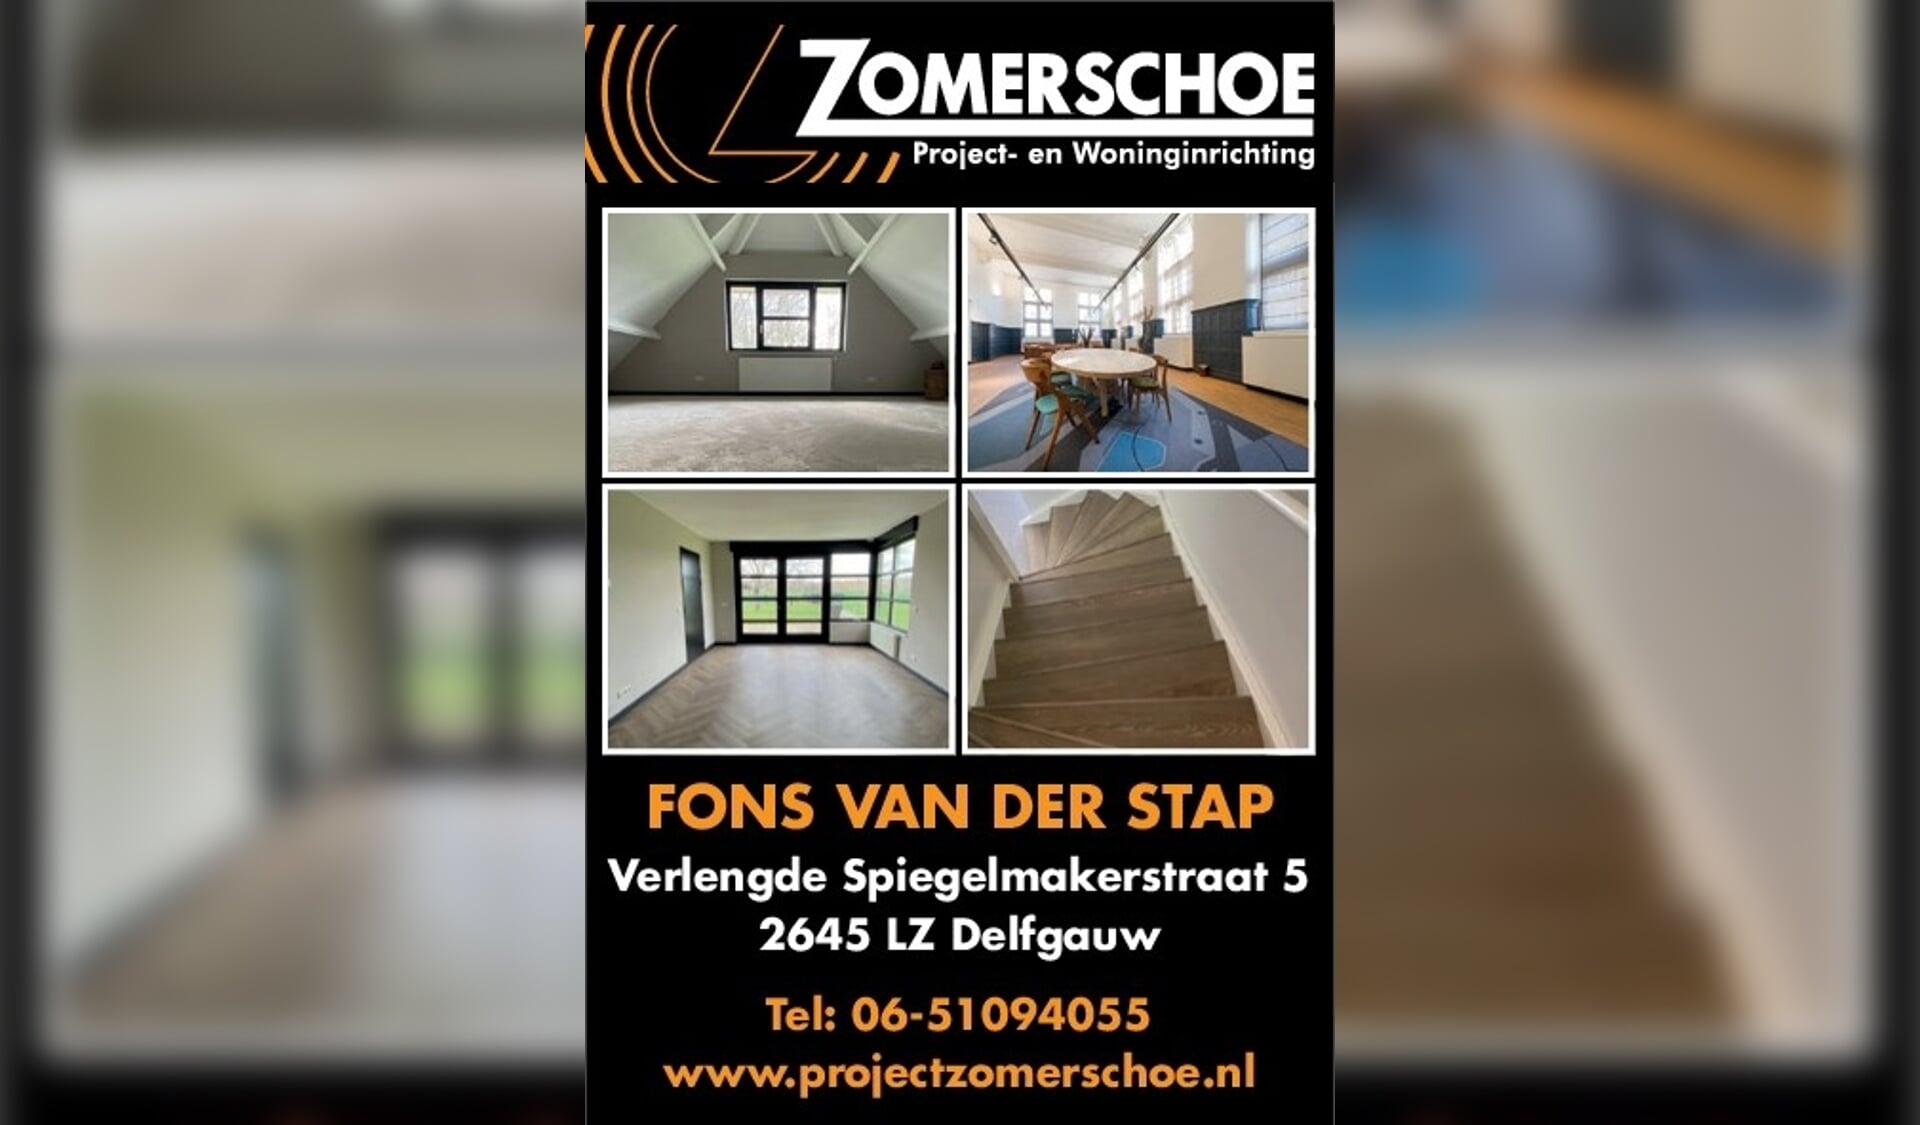 Voor elke vloer- en raambekleding kunt u terecht bij Fons van der Stap van Zomerschoe project- en woninginrichting in Delfgauw 